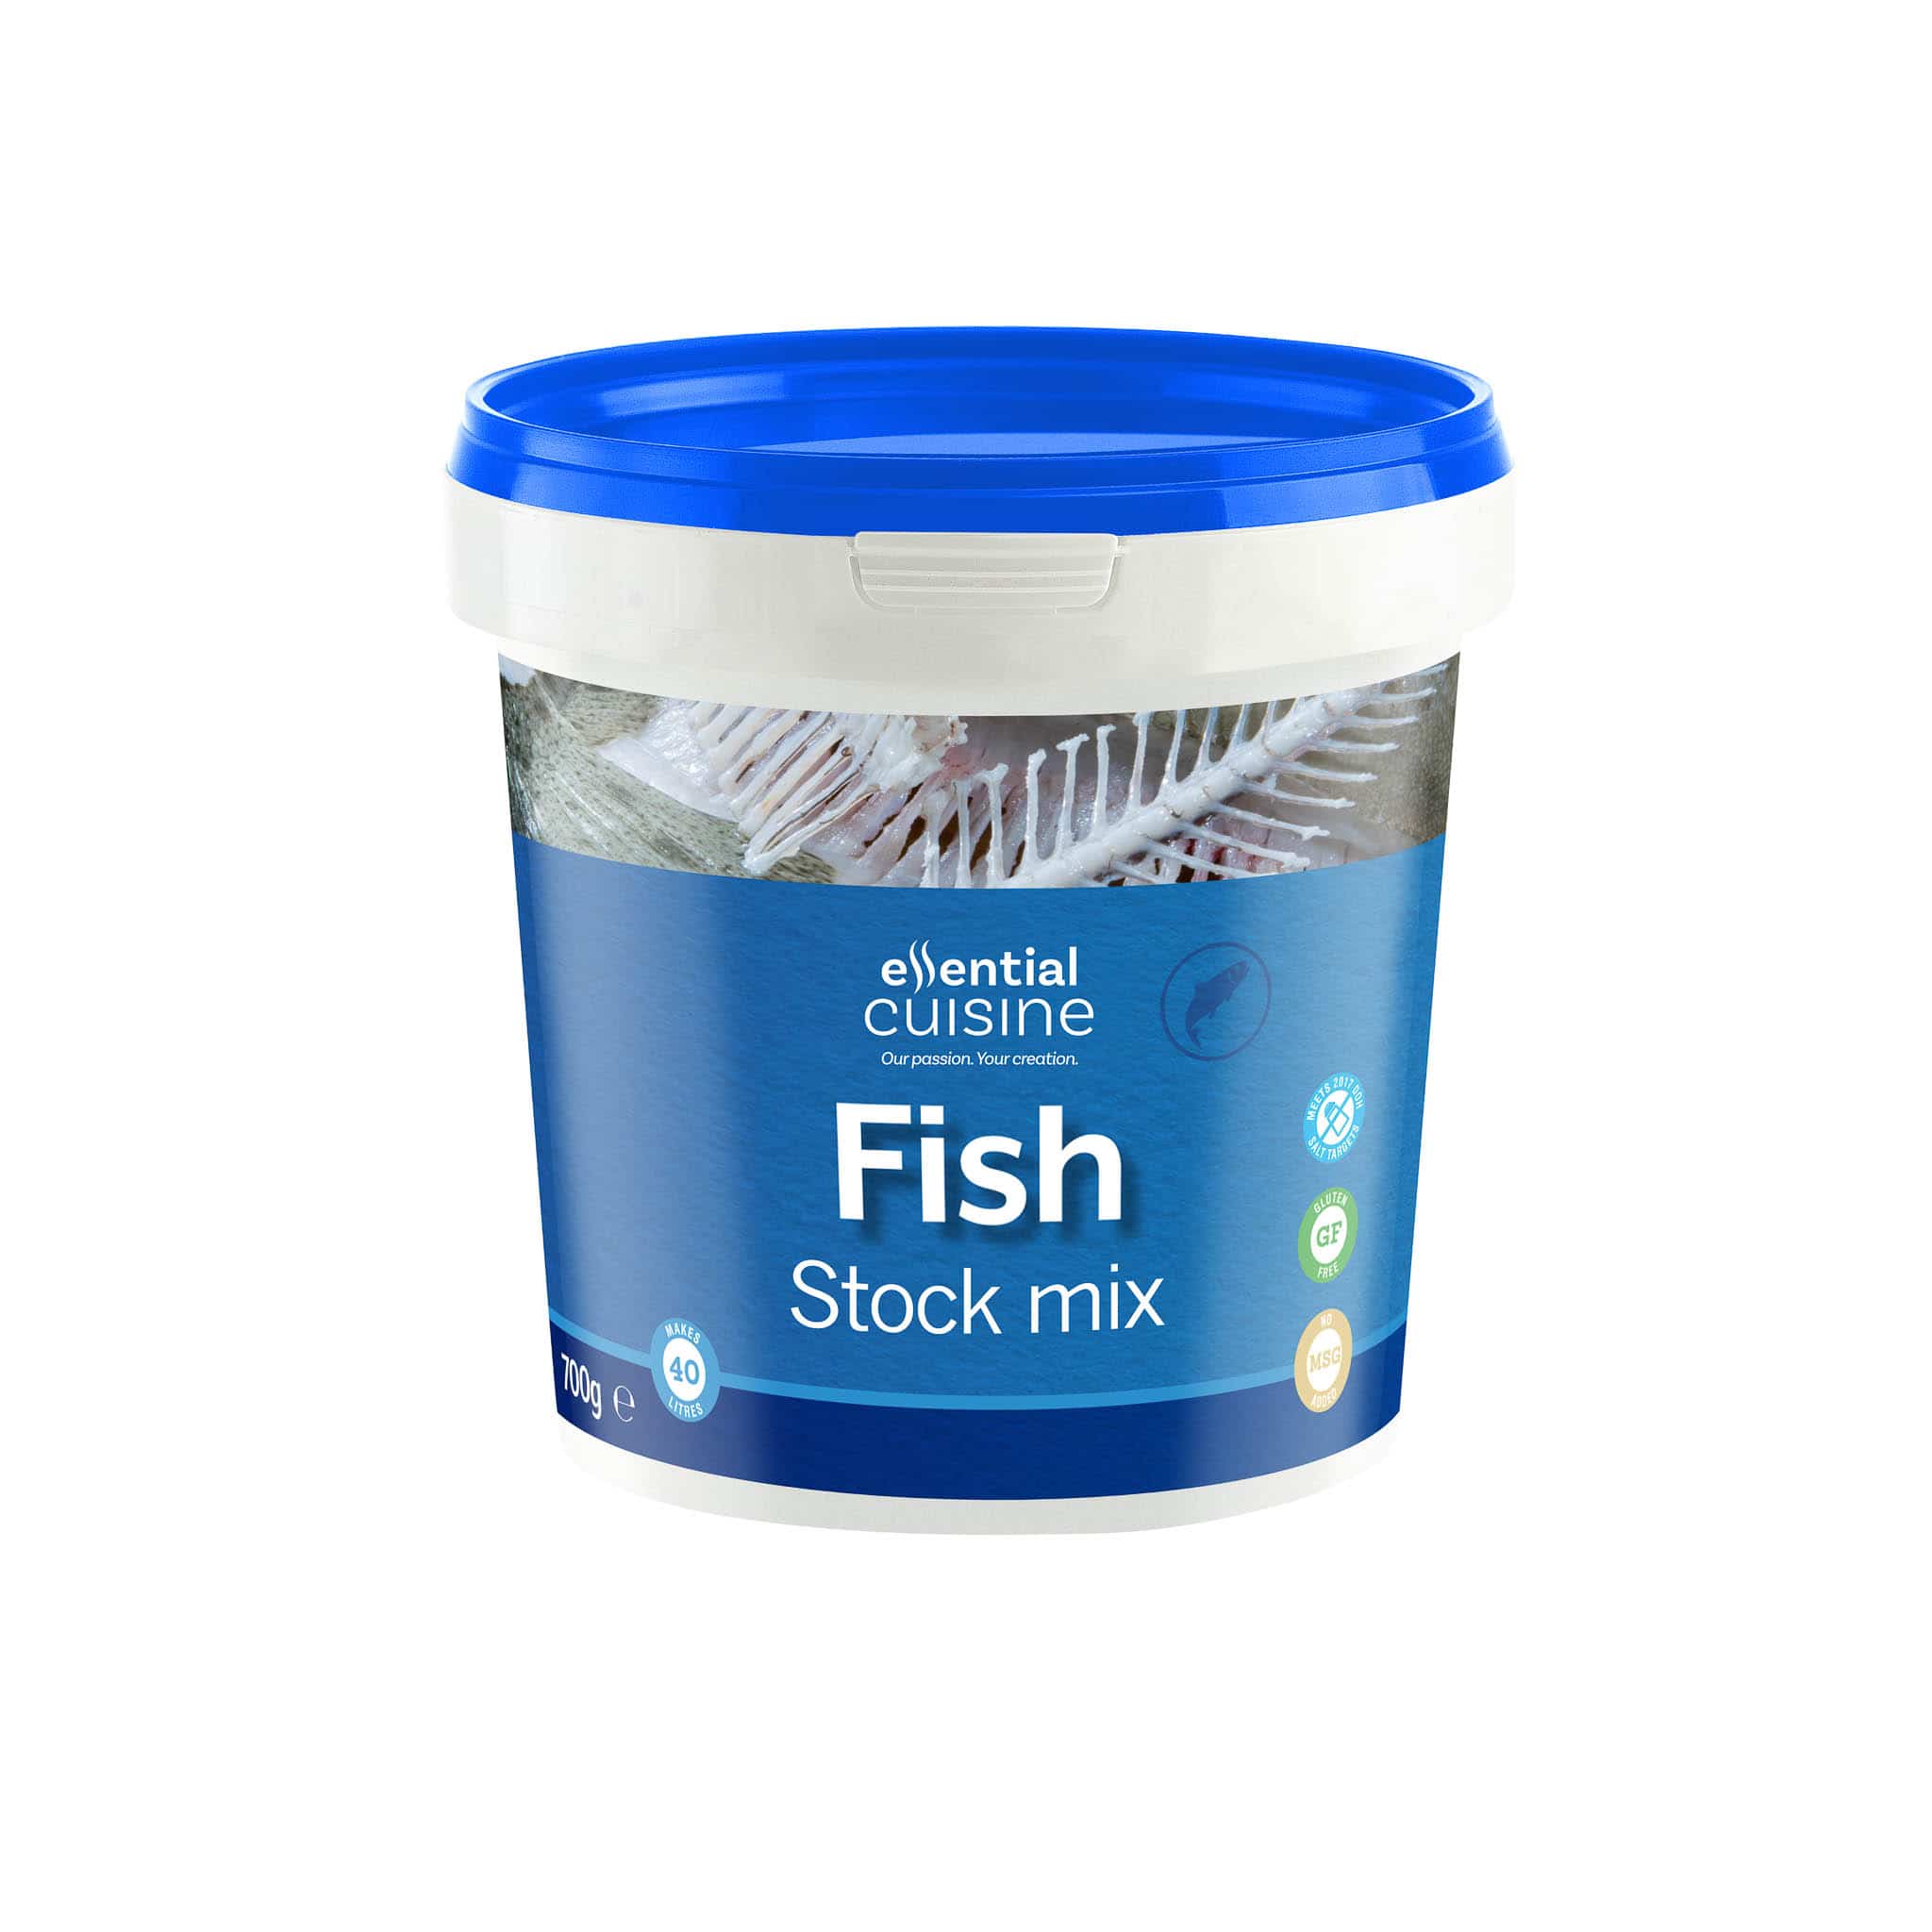 Essential Cuisine Fish Stock Mix 700g